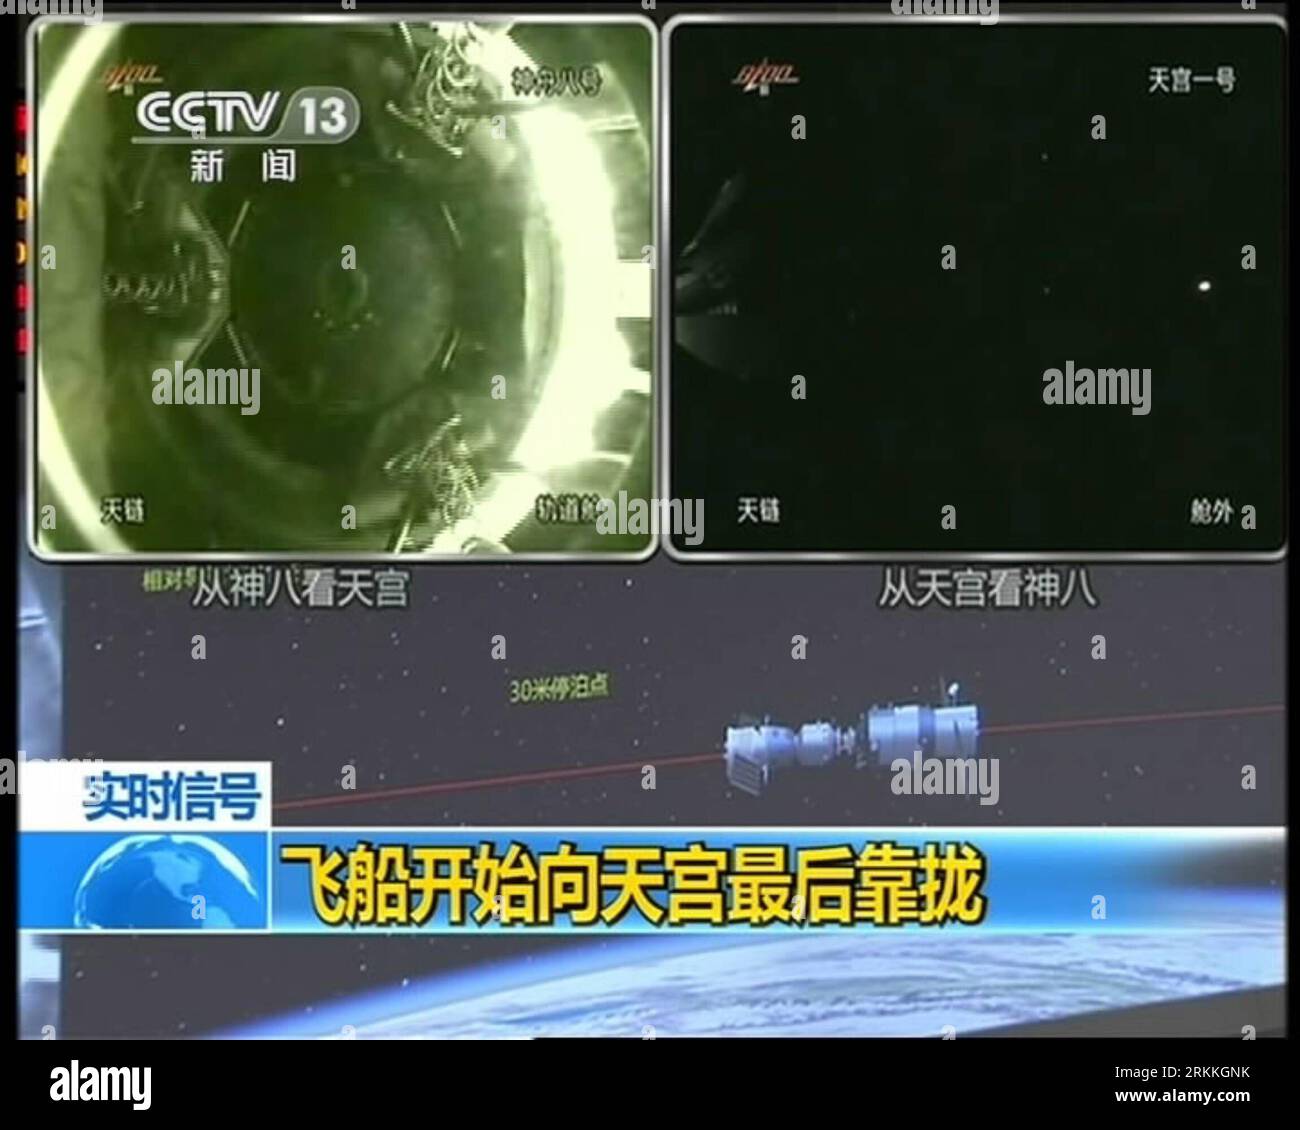 Bildnummer : 56241475 Datum : 02.11.2011 Copyright : imago/Xinhua (111103) -- PÉKIN, 3 novembre 2011 (Xinhua) -- Une capture vidéo prise à la télévision centrale de Chine le 3 novembre 2011 montre le vaisseau spatial Shenzhou-8 amarré avec le module de laboratoire spatial Tiangong-1. (Xinhua) (ljh) (TIANGONG-1&SHENZHOU-8 DOCKING)CHINA-TIANGONG-1 -SHENZHOU-8 -DOCKING (CN) PUBLICATIONxNOTxINxCHN Gesellschaft Raumfahrt Andocken Andockmanöver x0x xst 2011 quadrat premiumd 56241475 Date 02 11 2011 Copyright Imago XINHUA Pékin nov 3 2011 XINHUA une tombe vidéo prise à la télévision centrale de Chine LE 3 2011 novembre montre T Banque D'Images